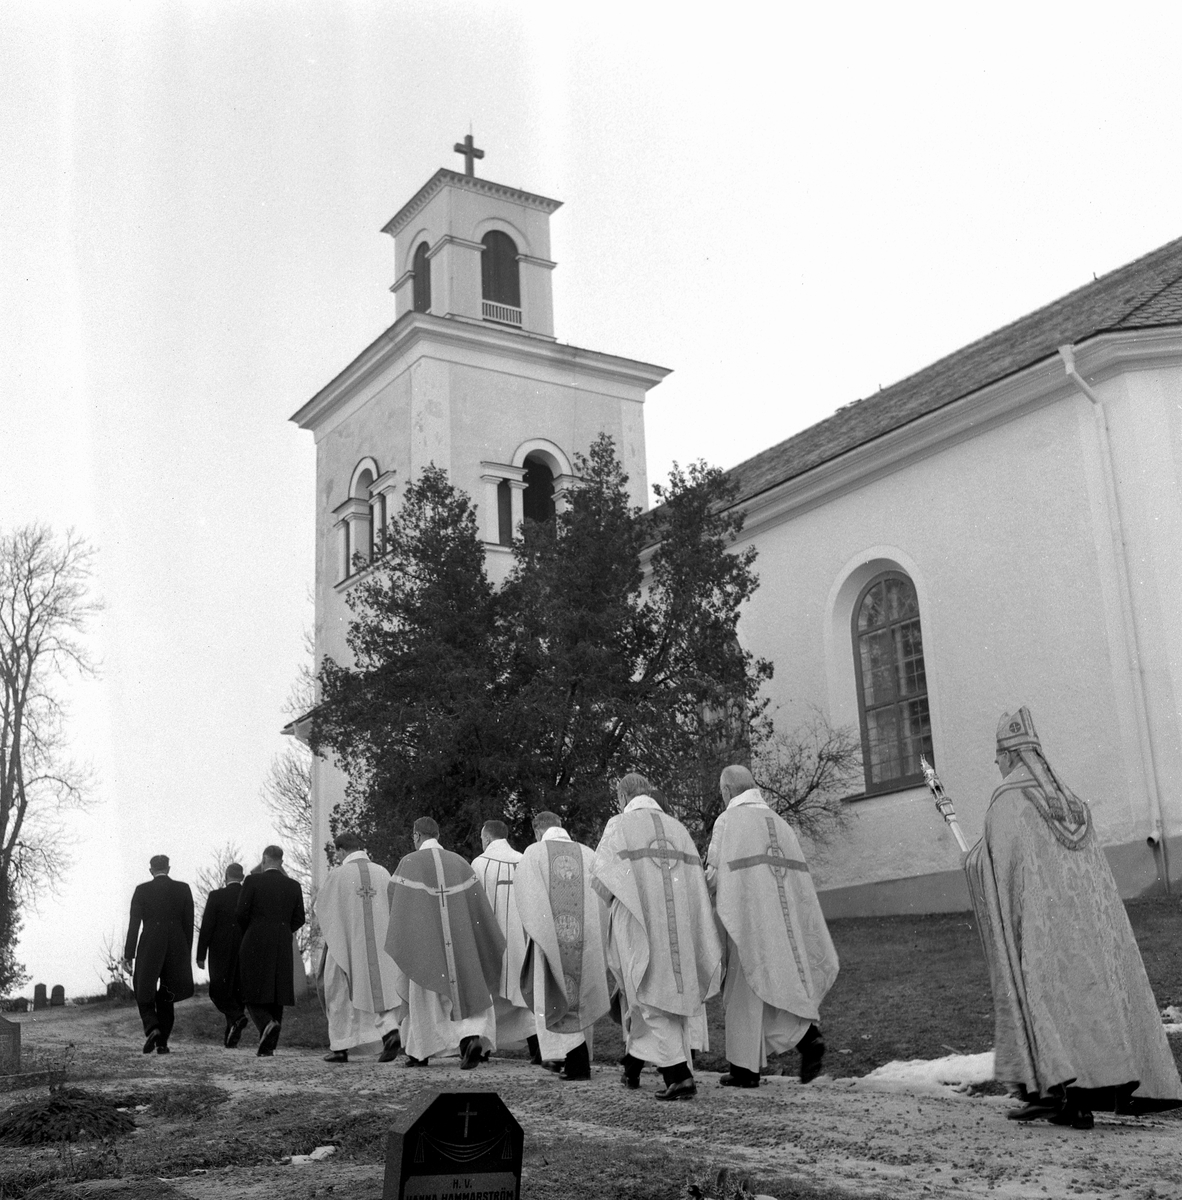 Vintrosa kyrka återinvigs.
December 1956.